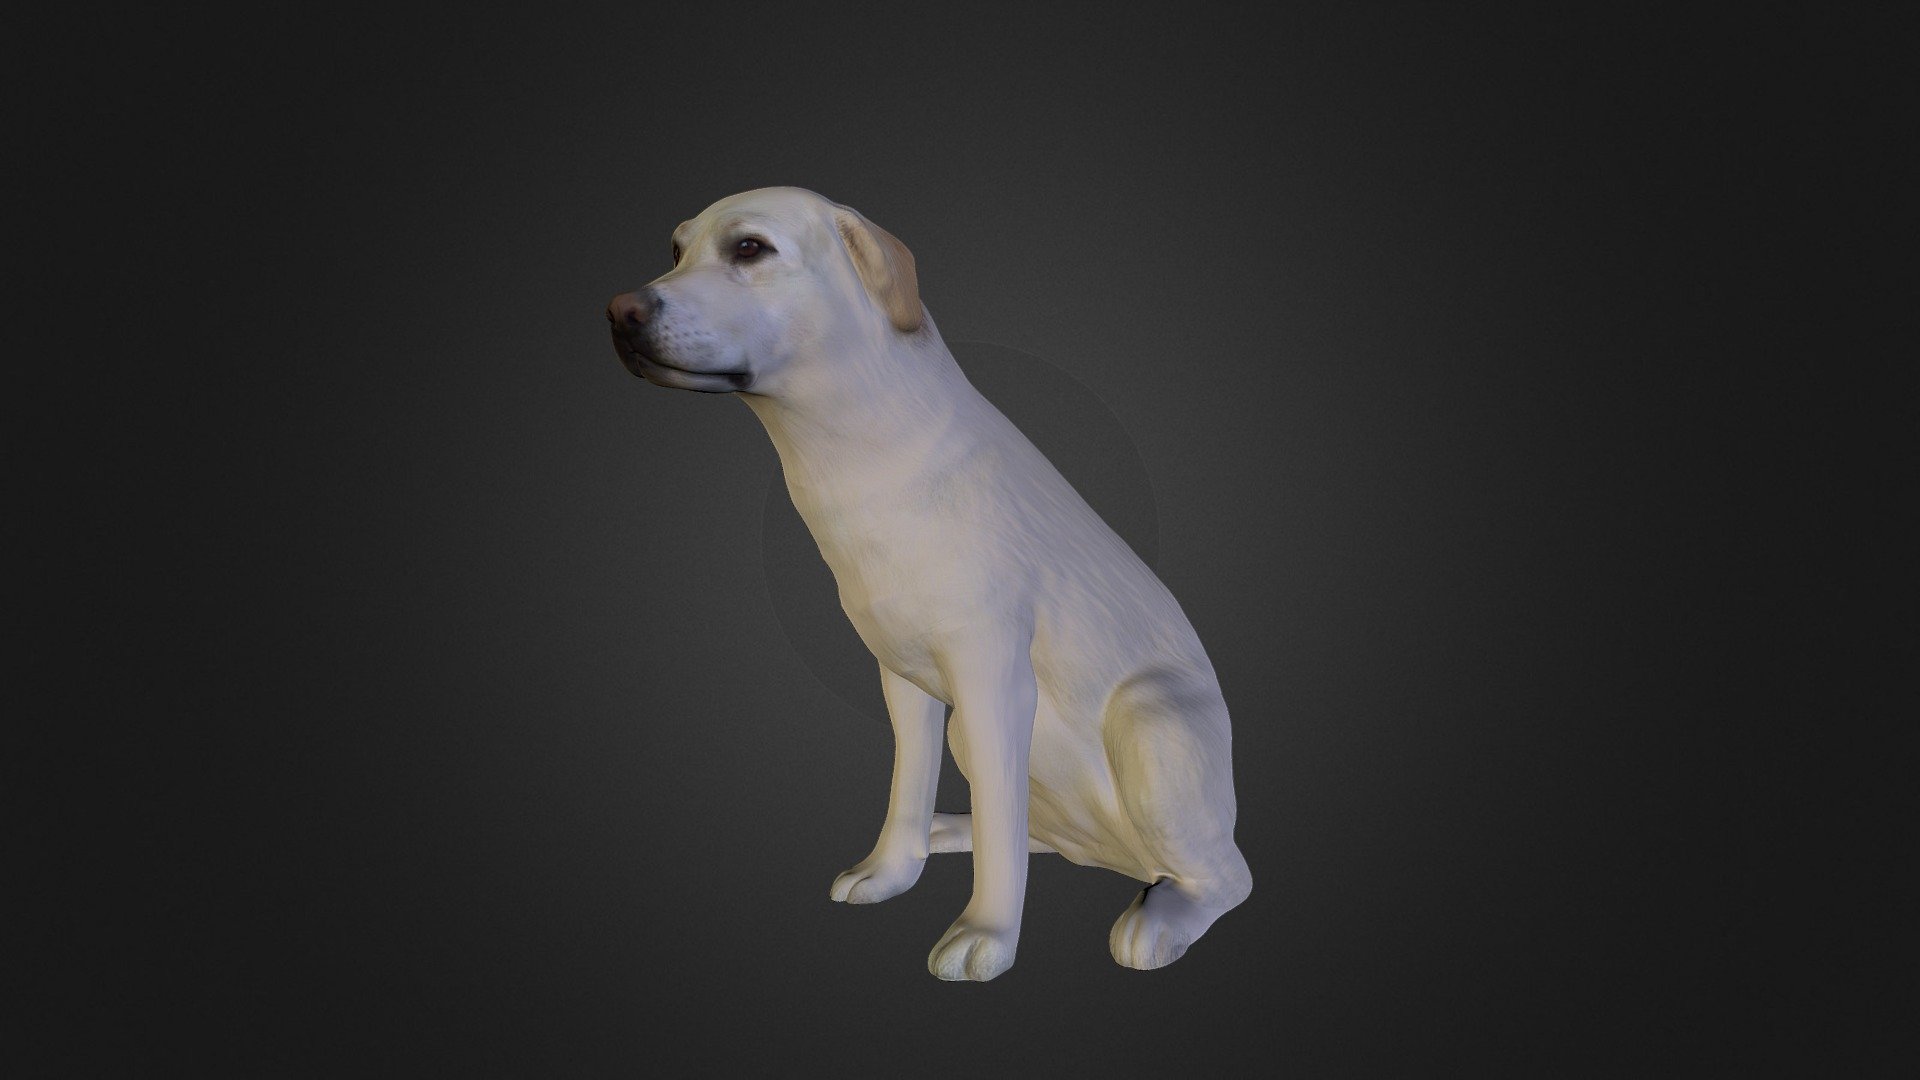 Der erste 3D-Scan eines Tieres, hier von unserer Labrador Hündin Amy. 
Auch hier kommt der schnelle Scan von unter 1 Sekunde sehr gut zur Geltung 3d model